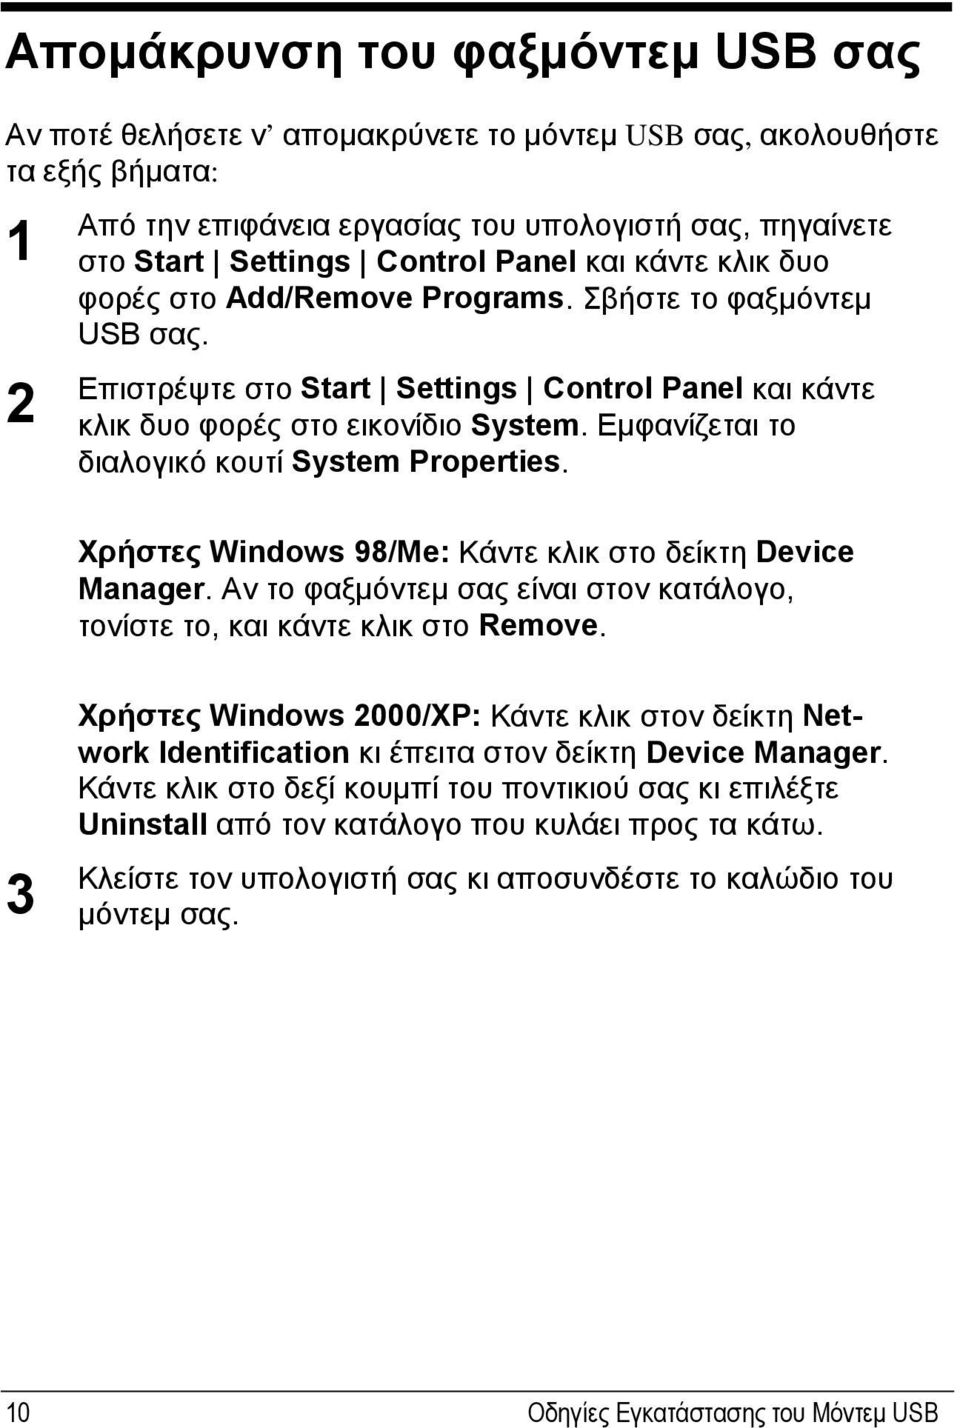 Εμφανίζεται το διαλογικό κουτί System Properties. Χρήστες Windows 98/Me: Κάντε κλικ στο δείκτη Device Manager. Αν το φαξμόντεμ σας είναι στον κατάλογο, τονίστε το, και κάντε κλικ στο Remove.